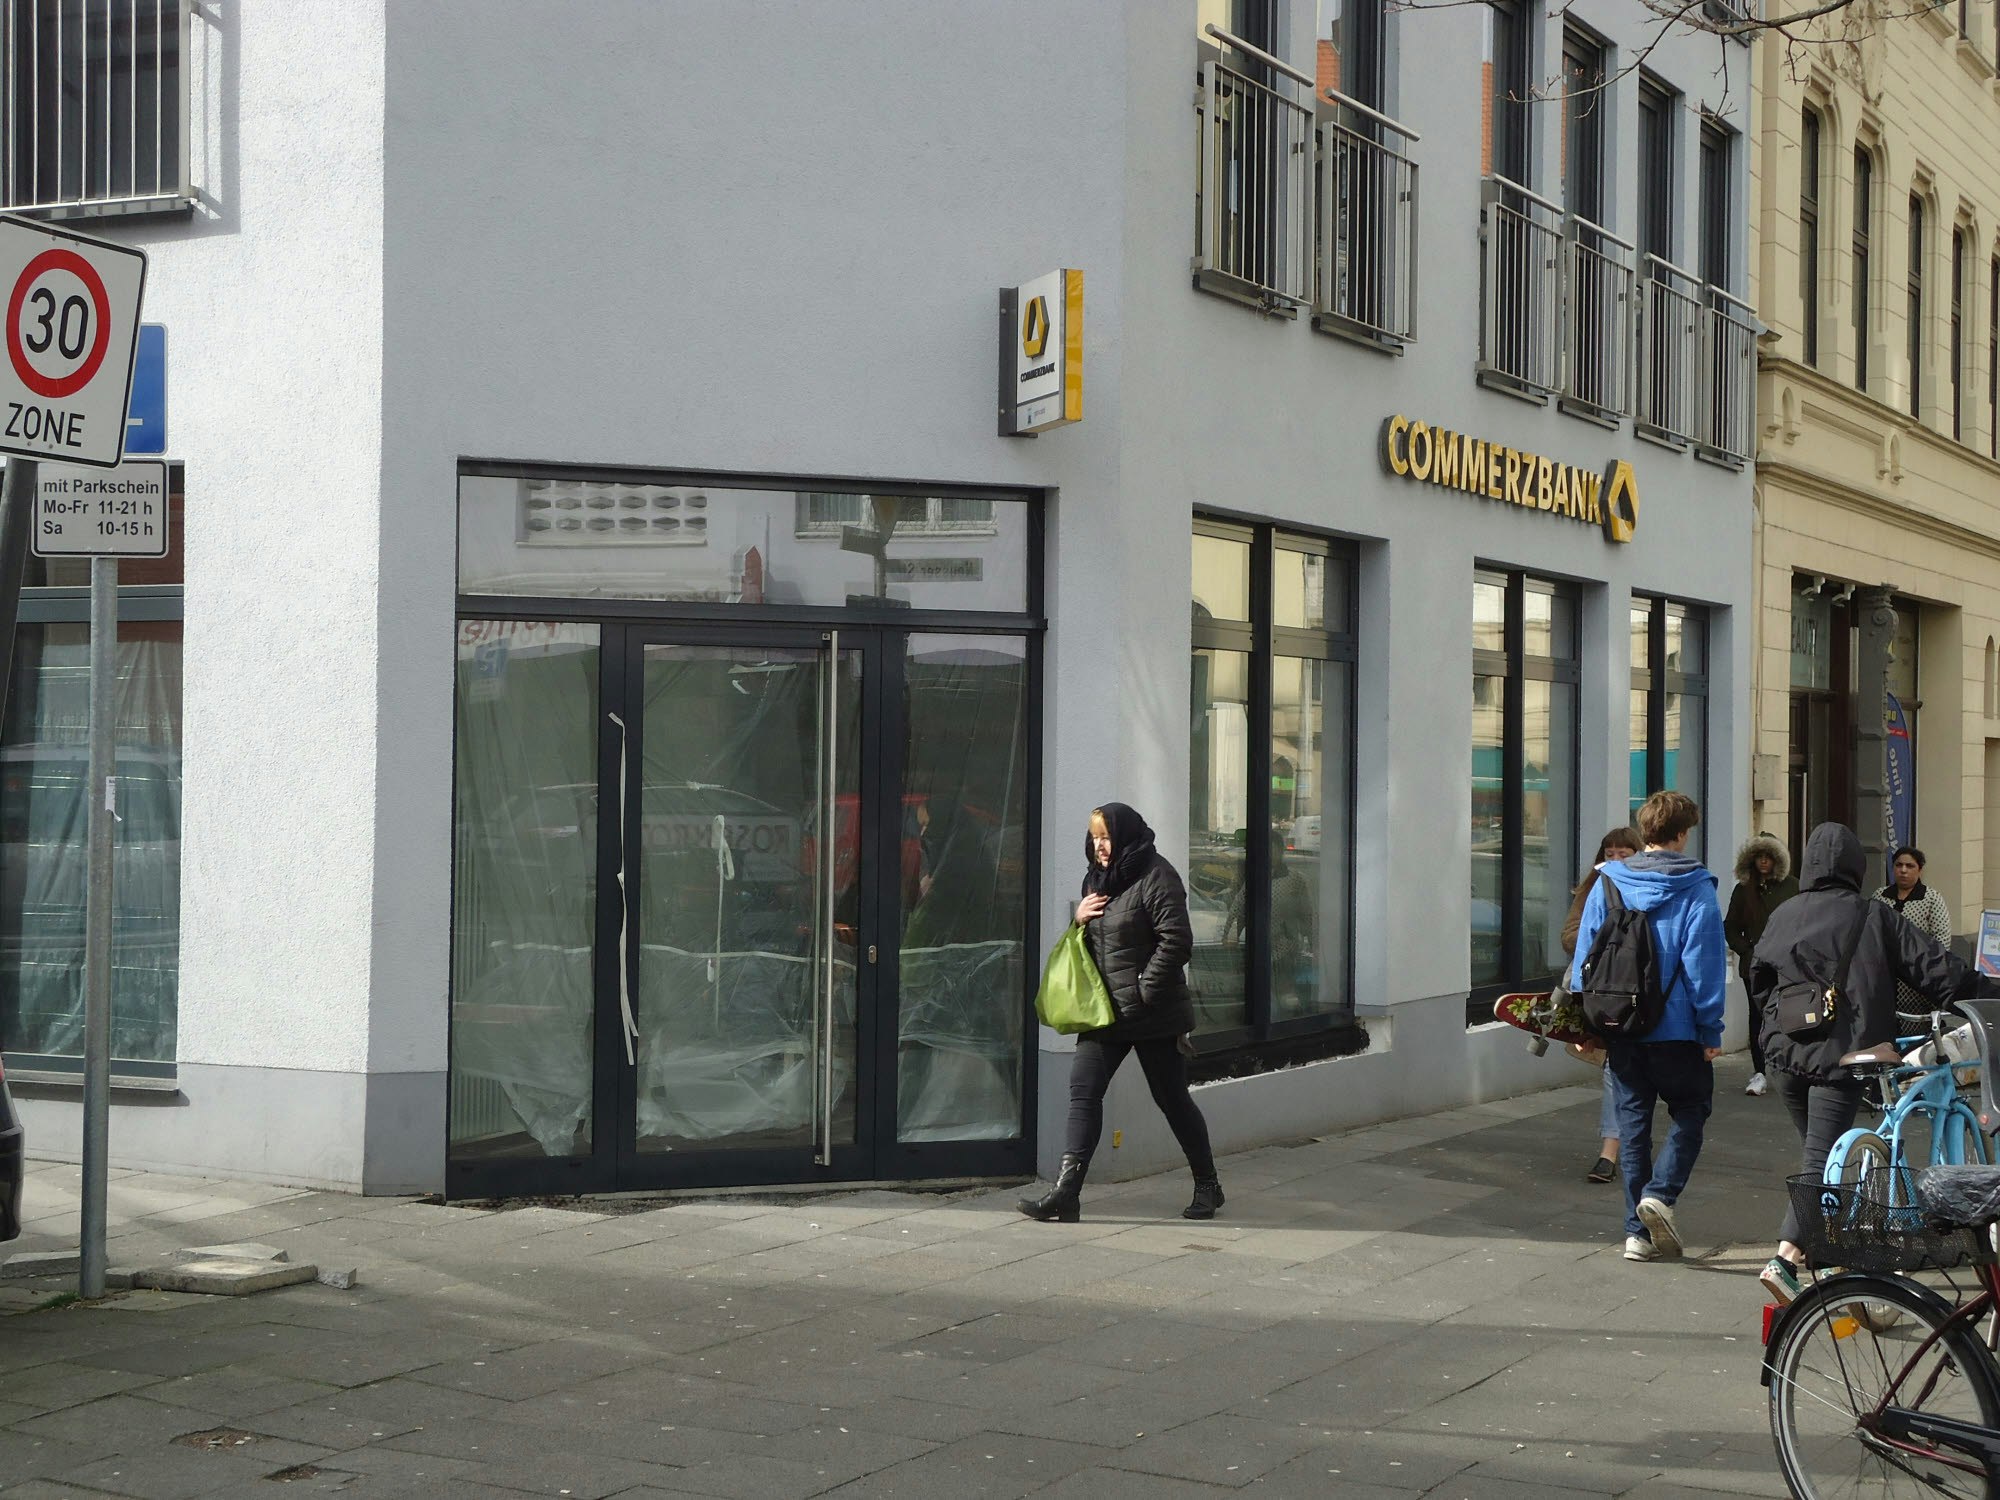 Die durch eine Sprengung beschädigte Santander-Filiale wird geschlossen. Bereits kurz vor Weihnachten wurde auch der Automat der Commerzbank angegriffen.